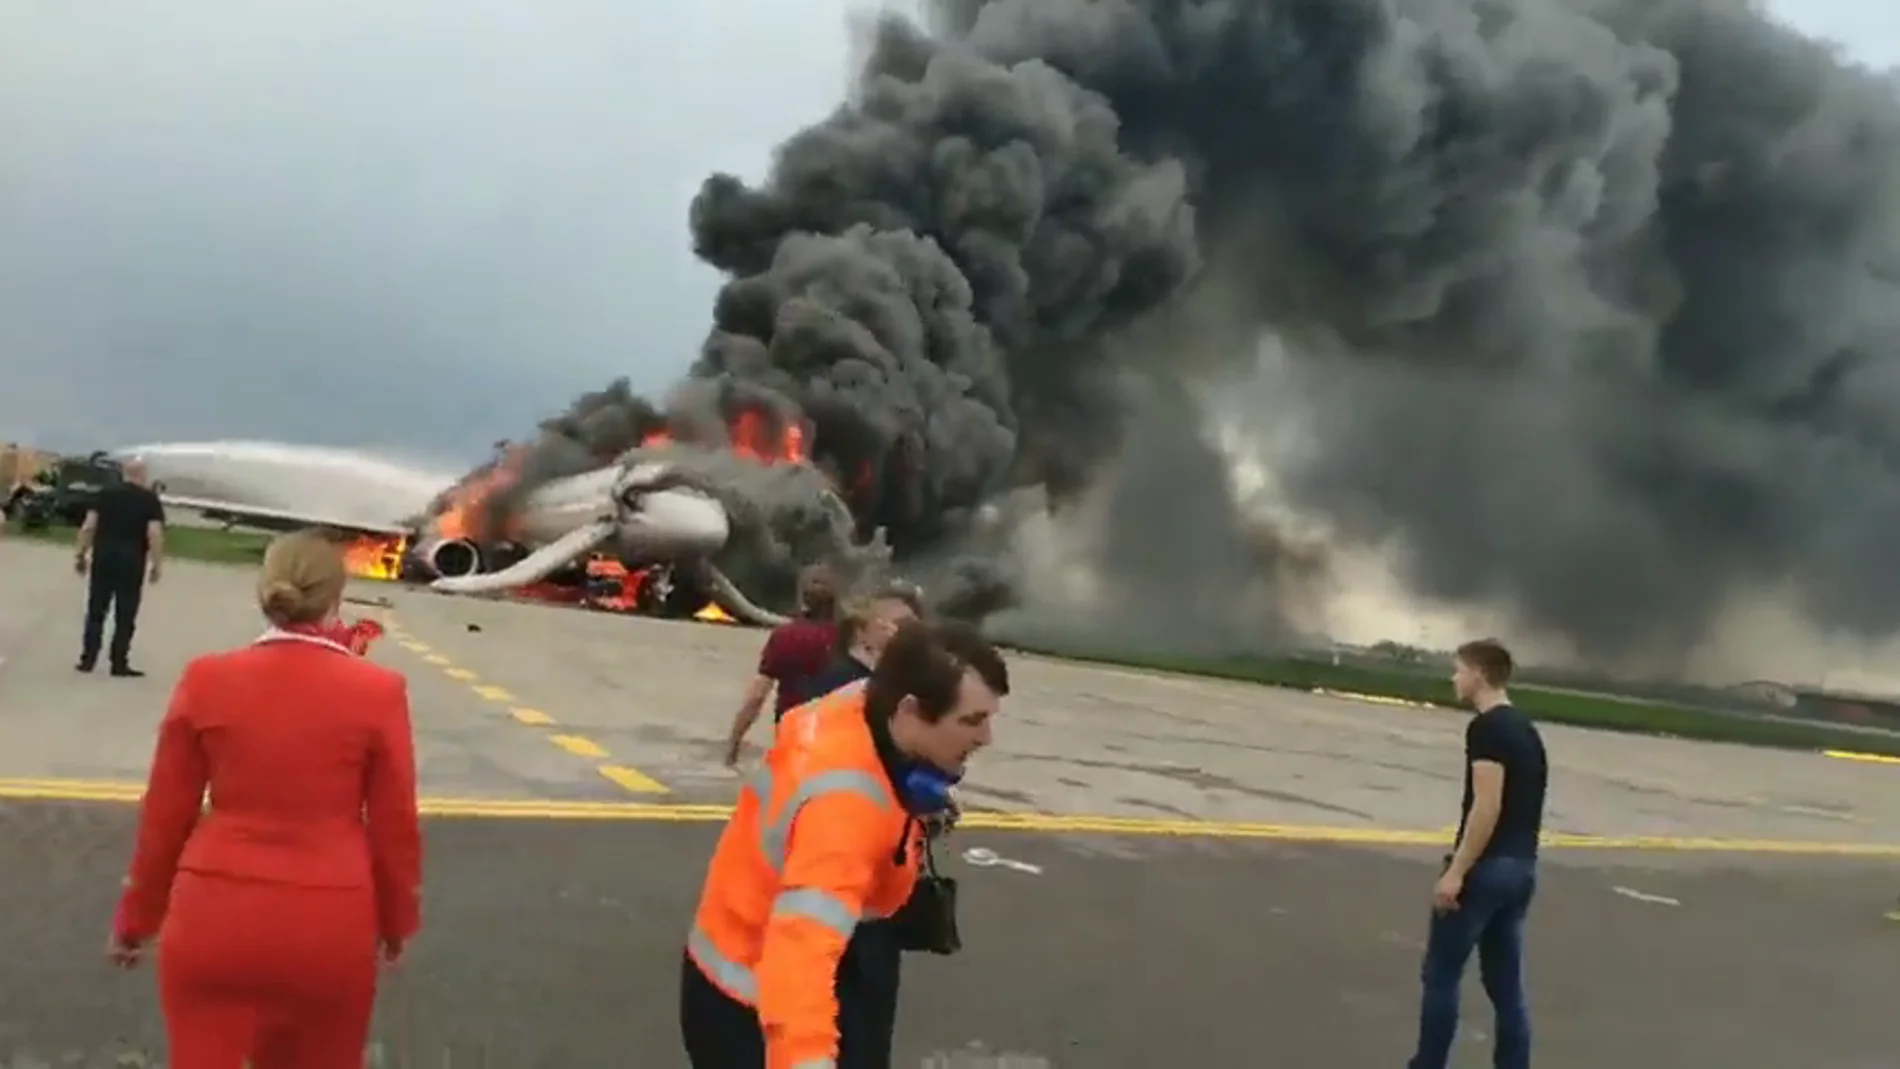 Salen a la luz las imágenes del copiloto del avión siniestrado en Moscú regresando a la aeronave en llamas para salvar pasajeros